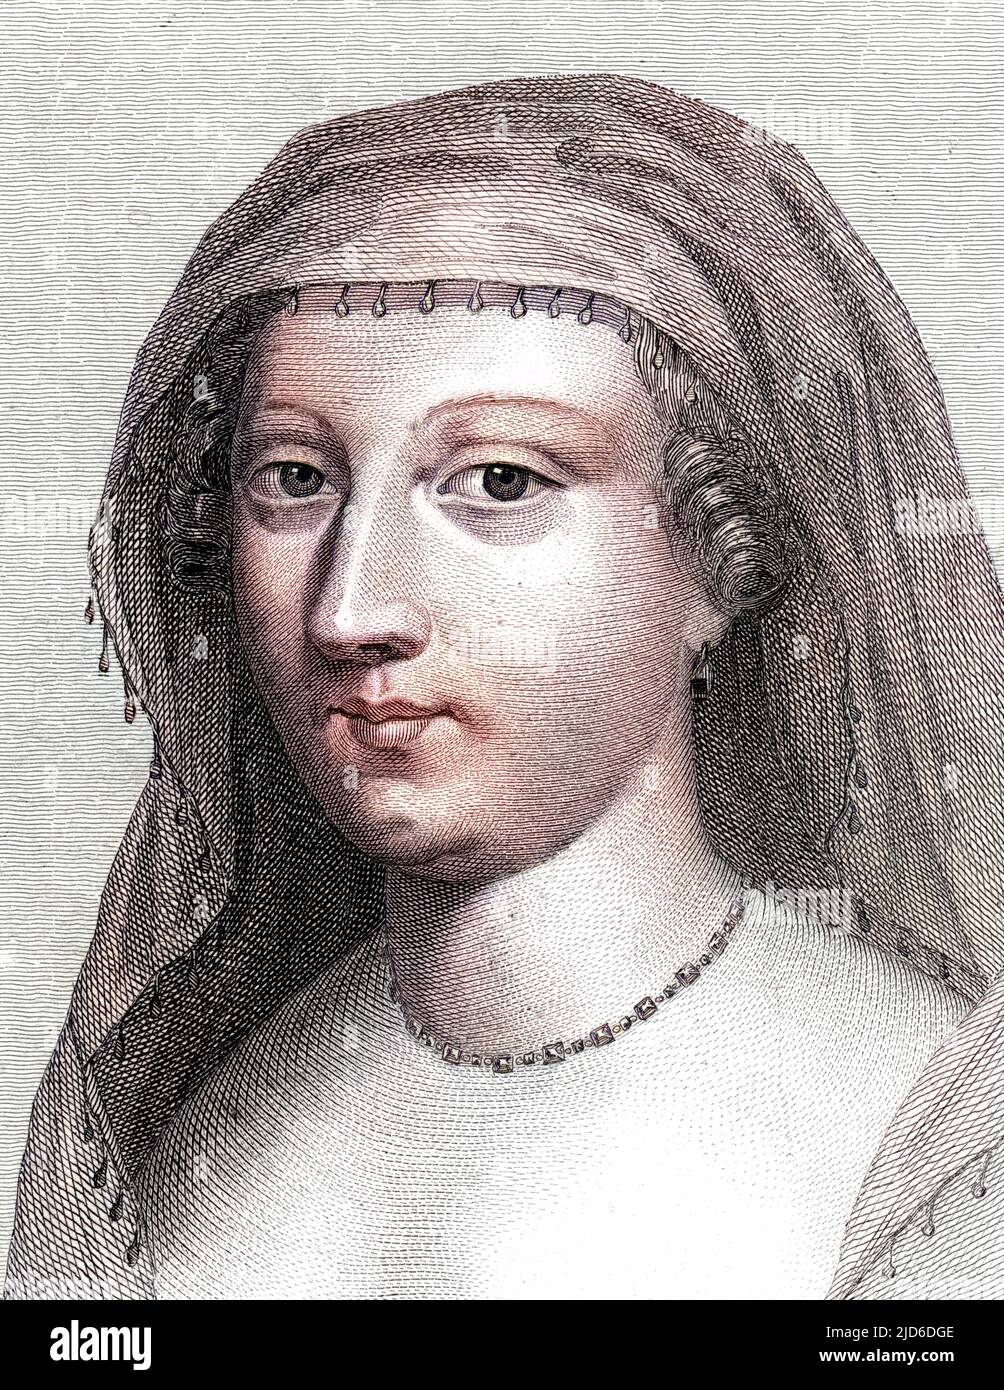 ANNE DE ROHAN, principessa de Gueminee moglie di Luigi VIII de Rohan, membro di una famiglia protestante leader. Versione colorata di : 10174470 Data: 1604 - 1685 Foto Stock